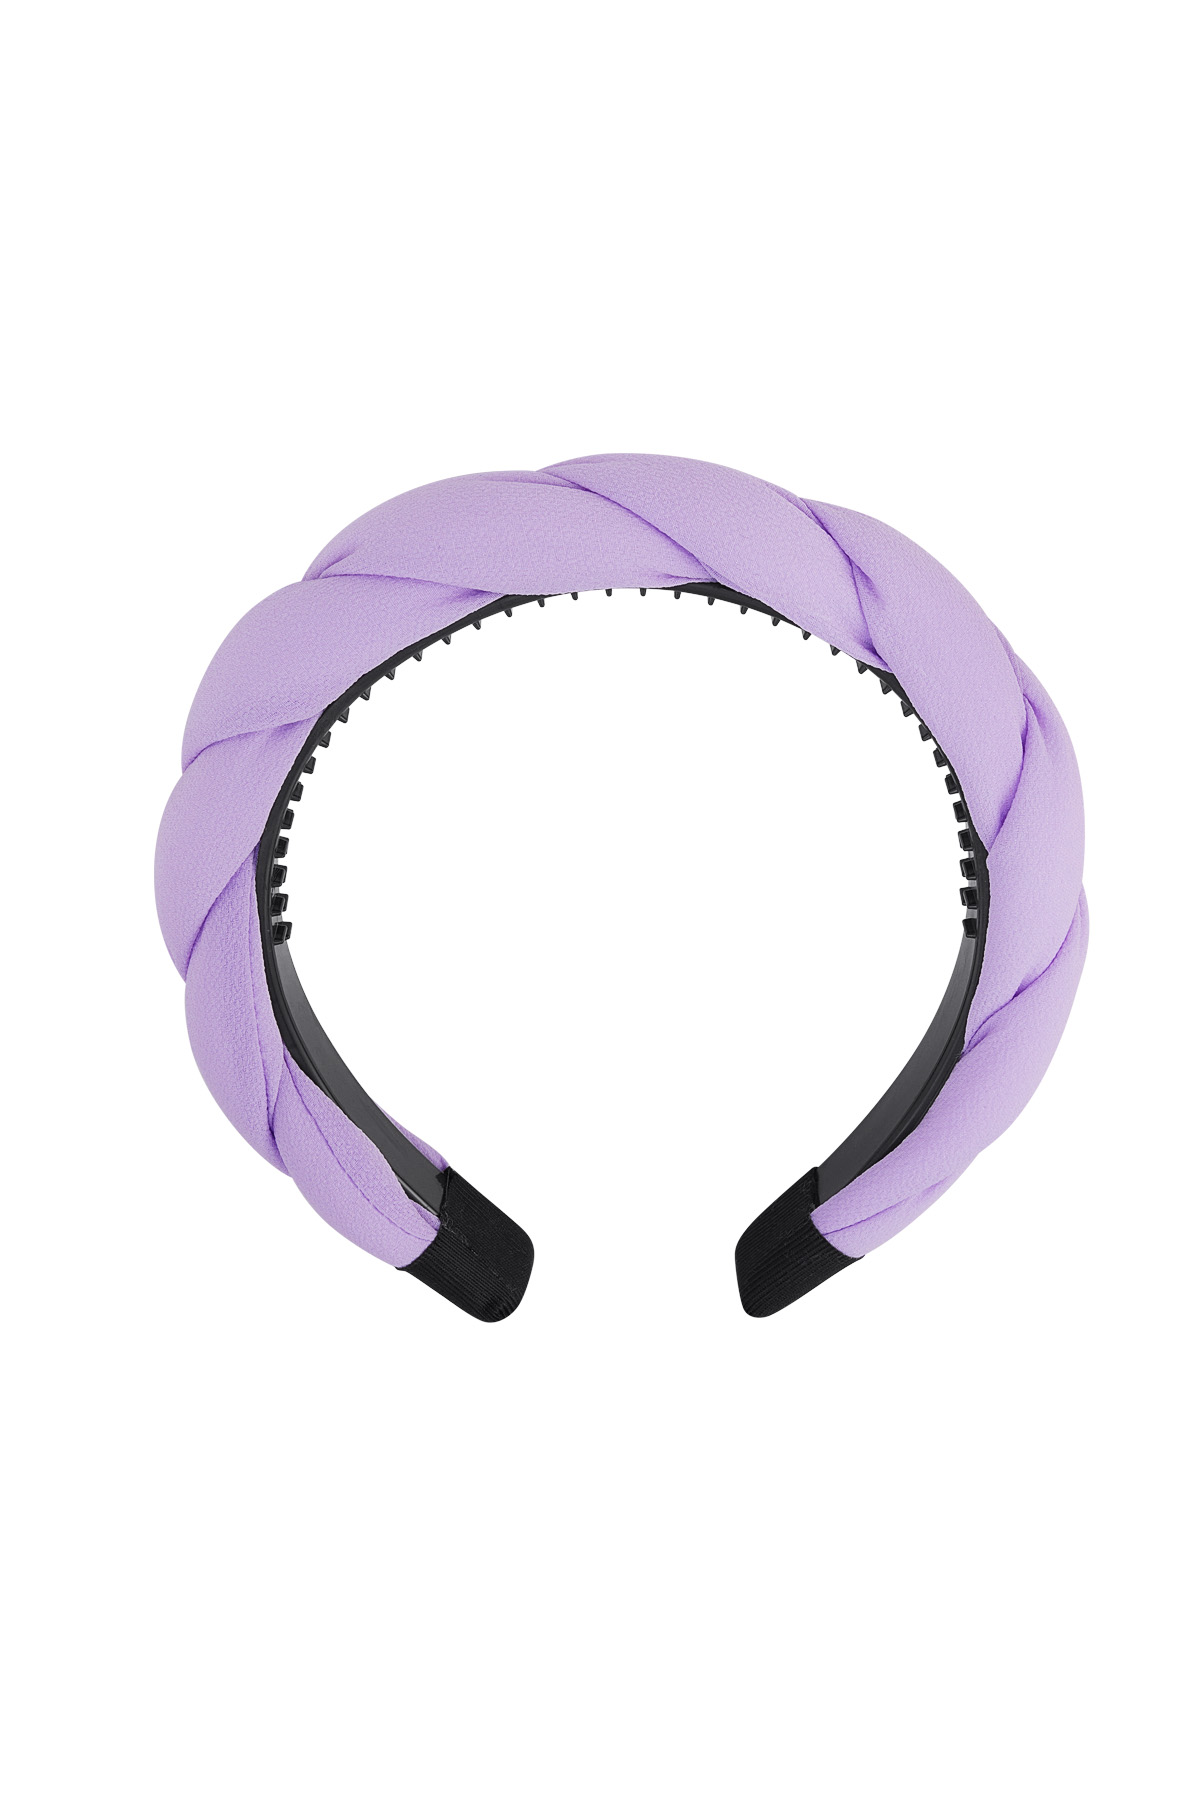 Detalle de trenza de cinta para el pelo - lila Morado Plástico